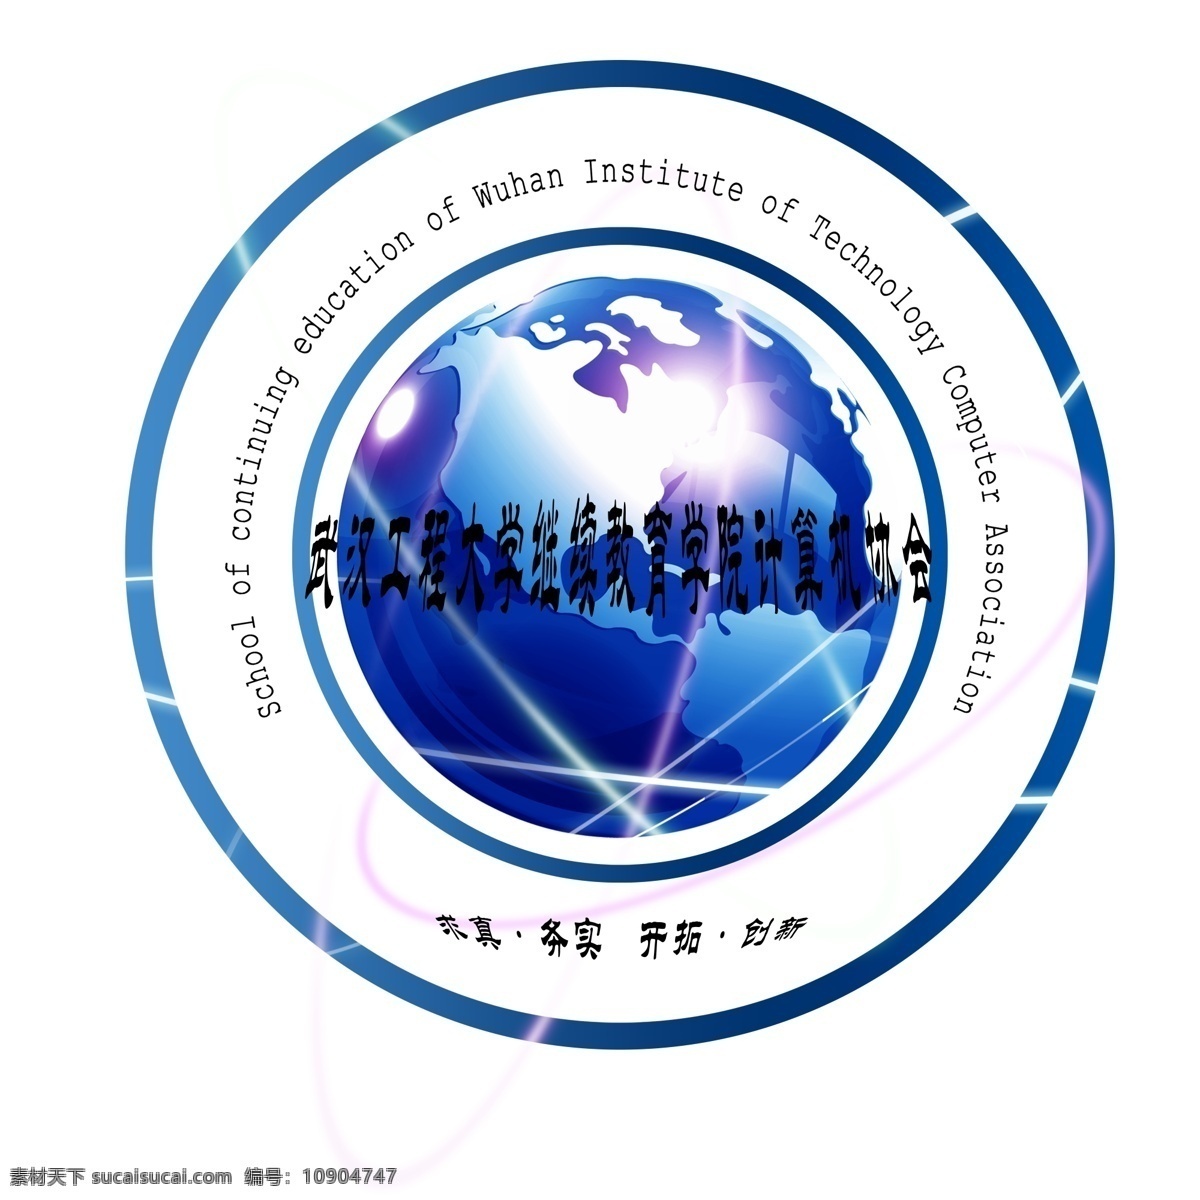 标志设计 地球 广告设计模板 开拓创新 源文件 武汉 工程 大学 继续 教育学院 计算机 协会 模板下载 求真务实 展板 企业文化展板